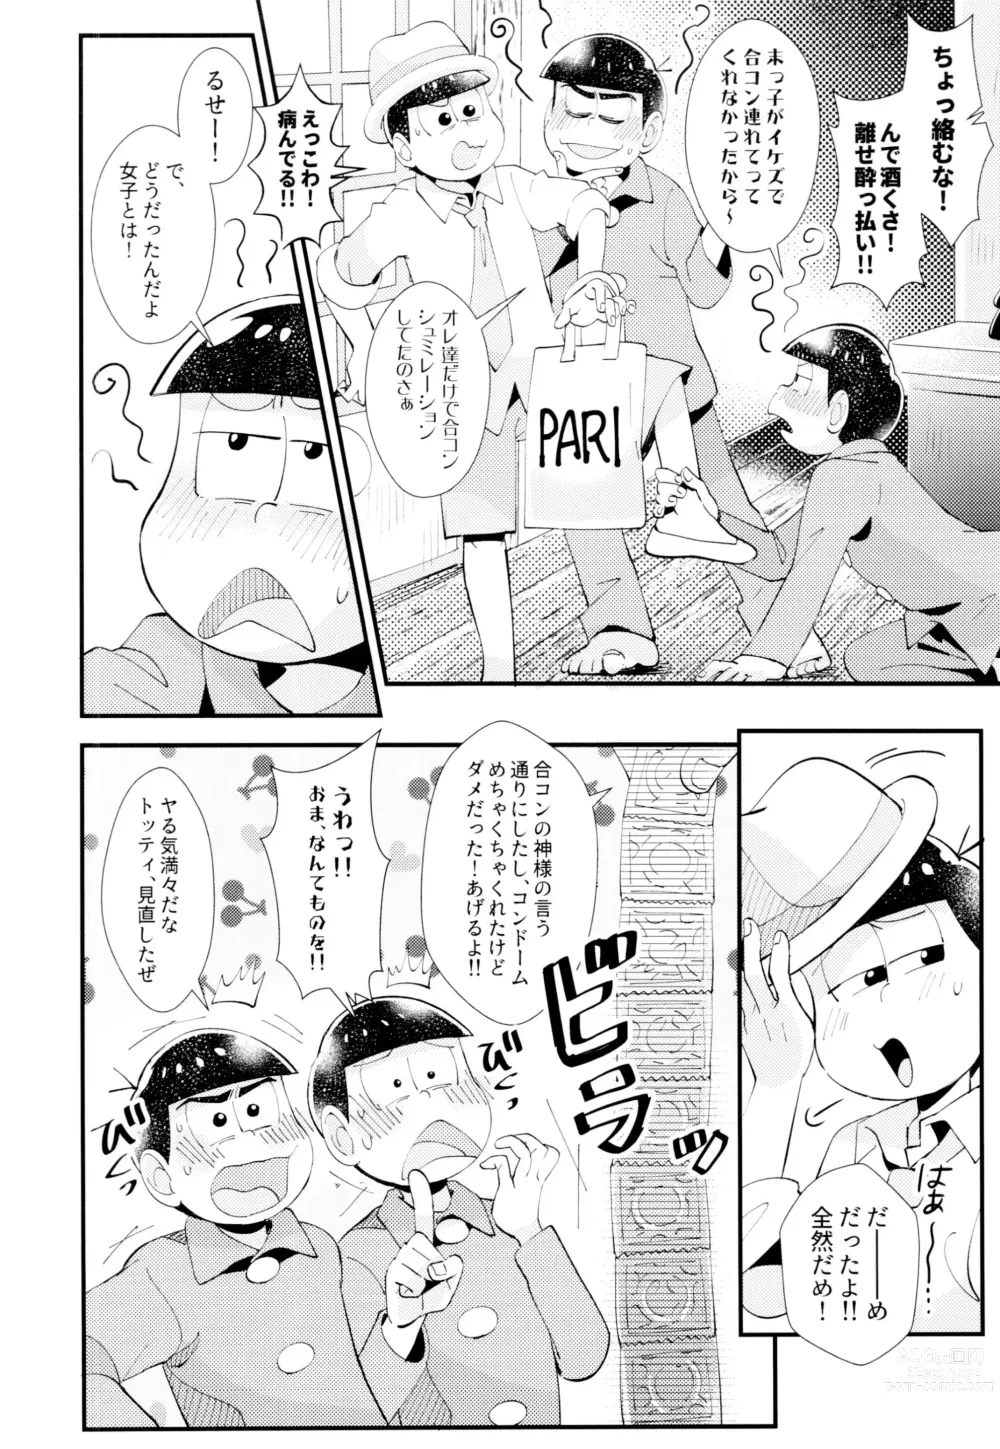 Page 6 of doujinshi Hajimari wa, Yomichi no Kaori.